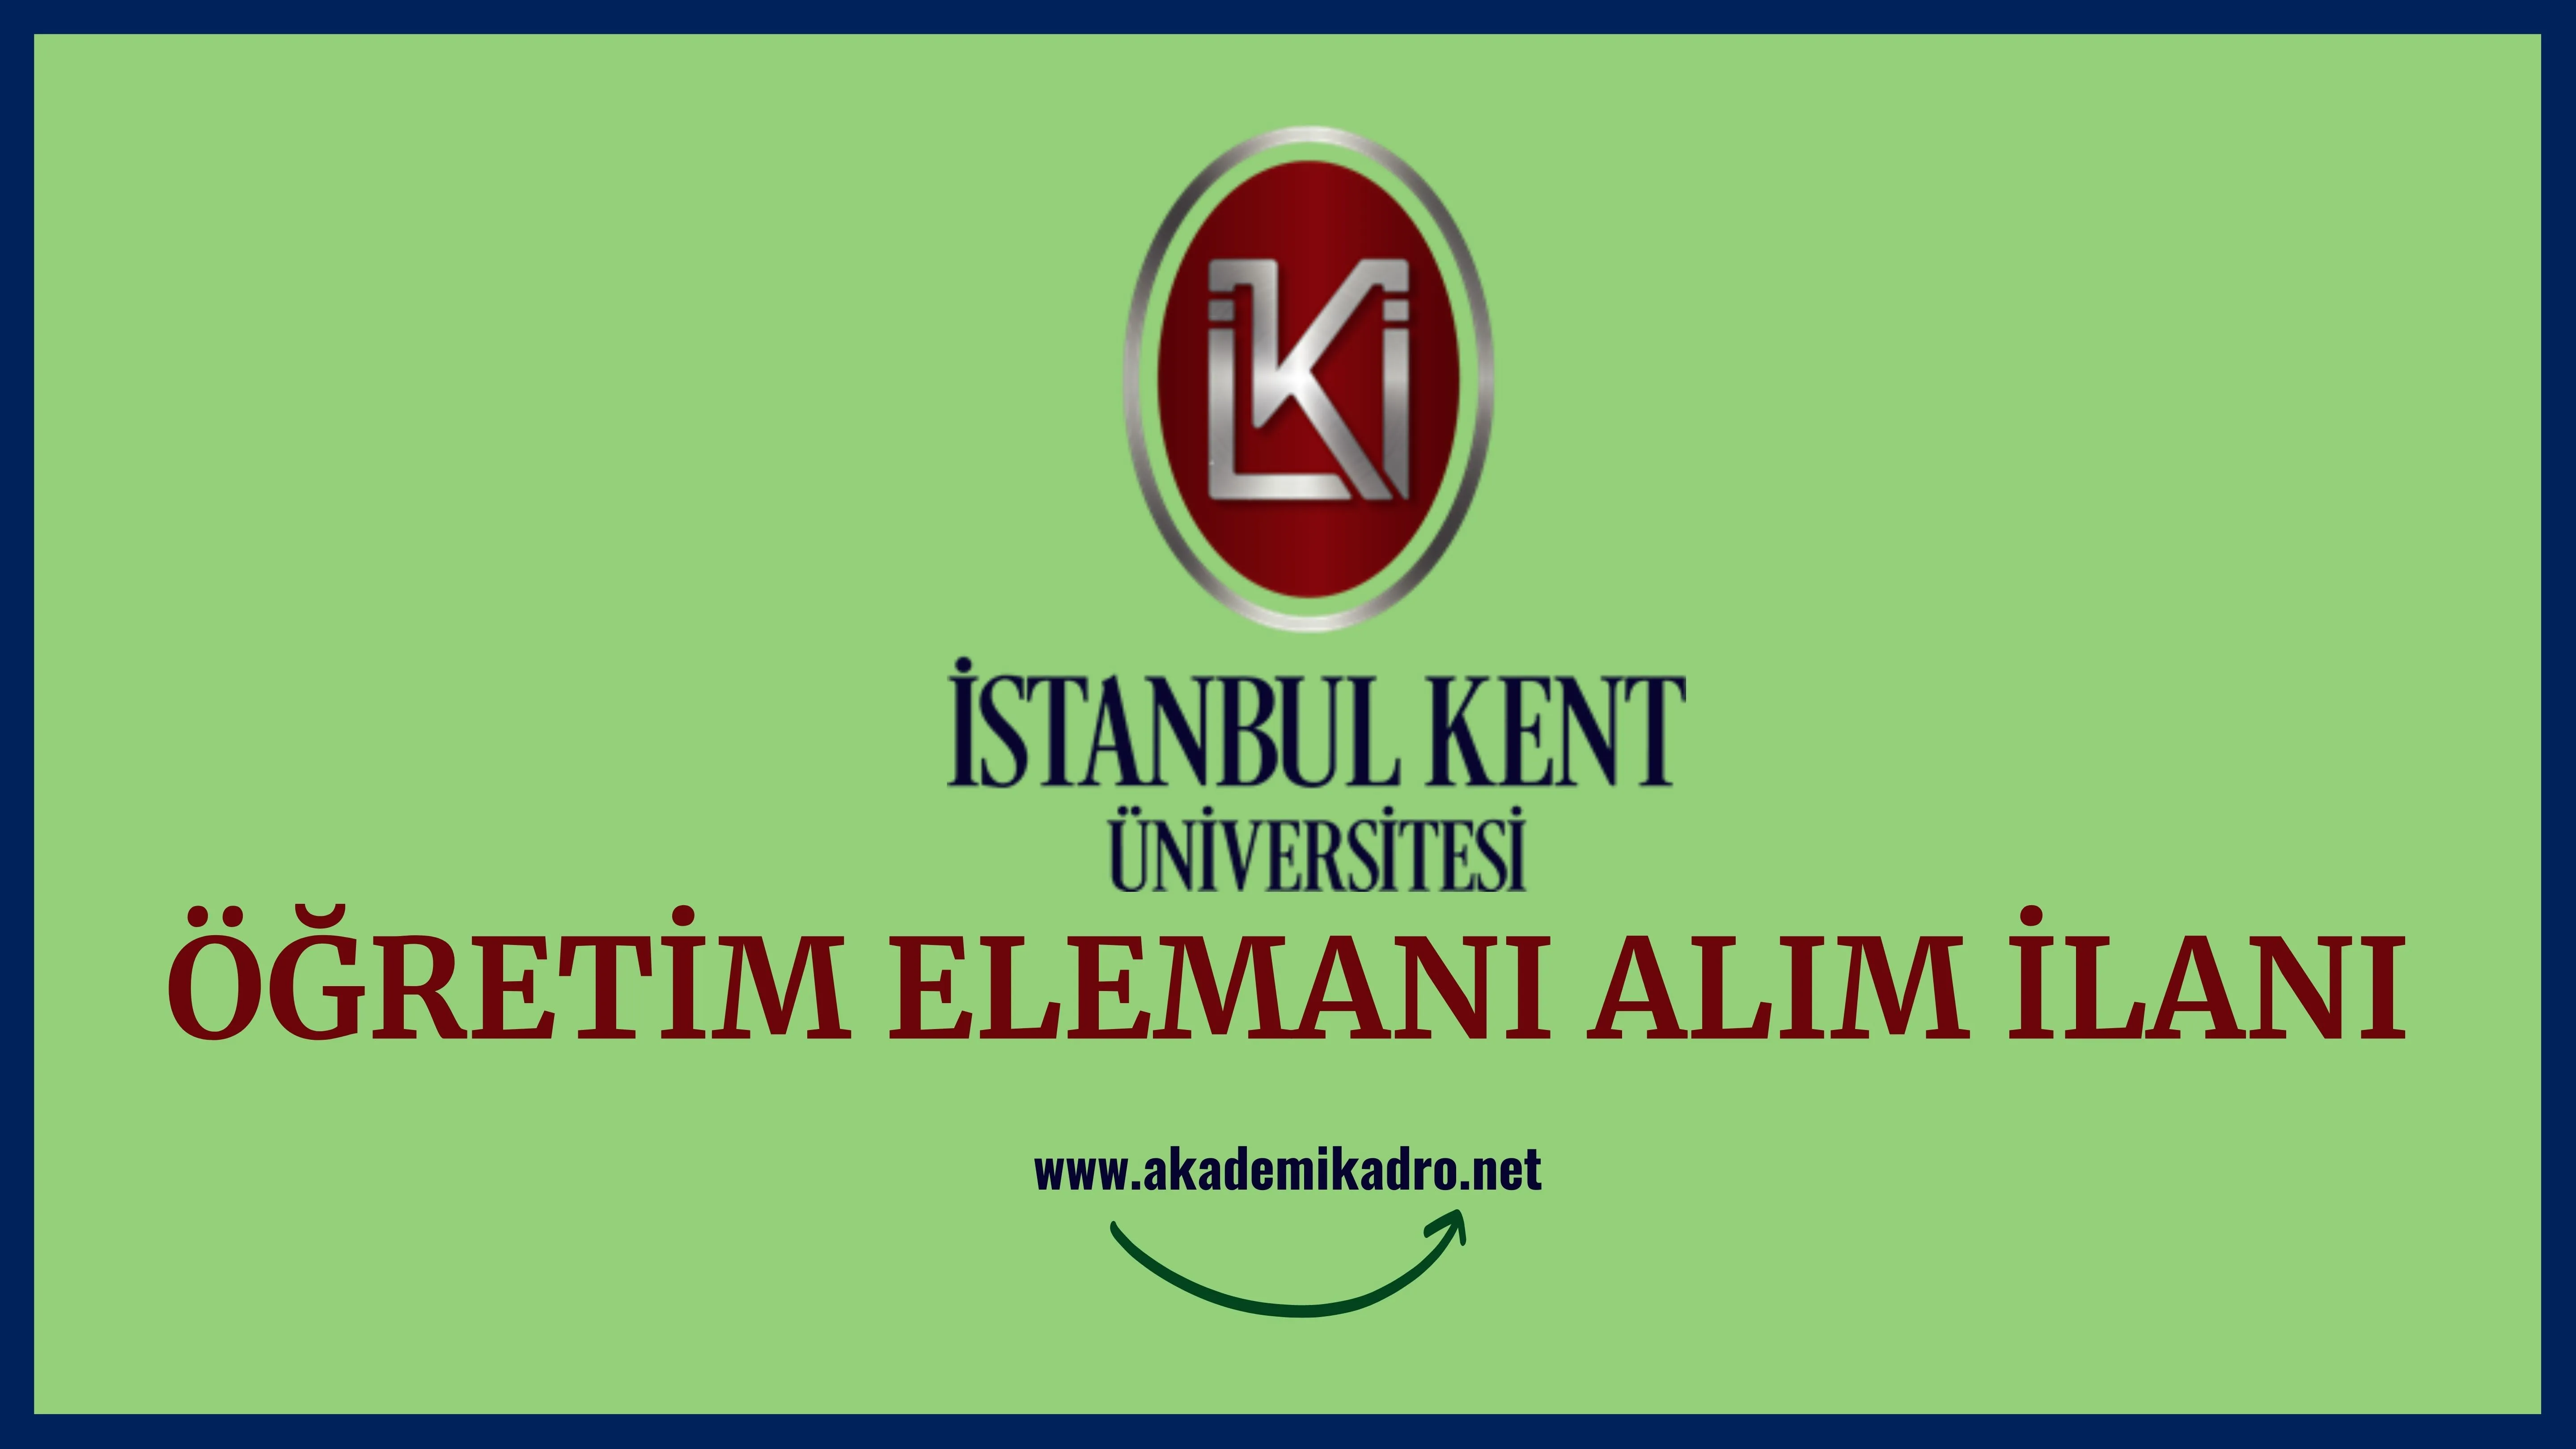 İstanbul Kent Üniversitesi Öğretim görevlisi ve öğretim üyesi olmak üzere 28 öğretim elemanı alacak.